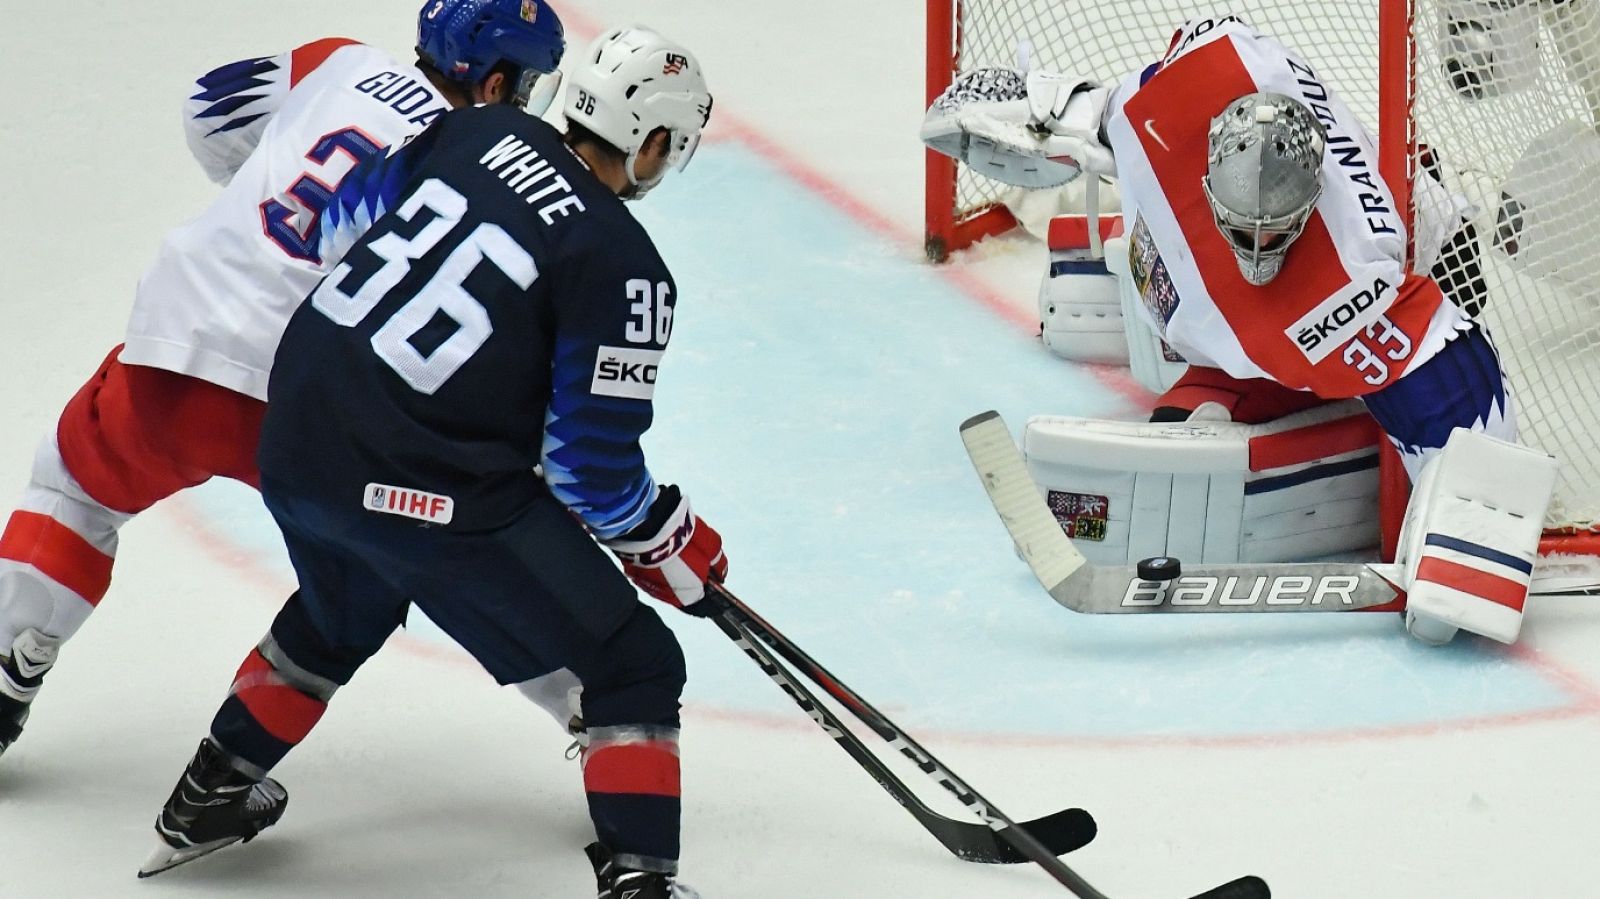 Hockey Hielo - Campeonato del Mundo. 1/4 final: Estados Unidos - República Checa